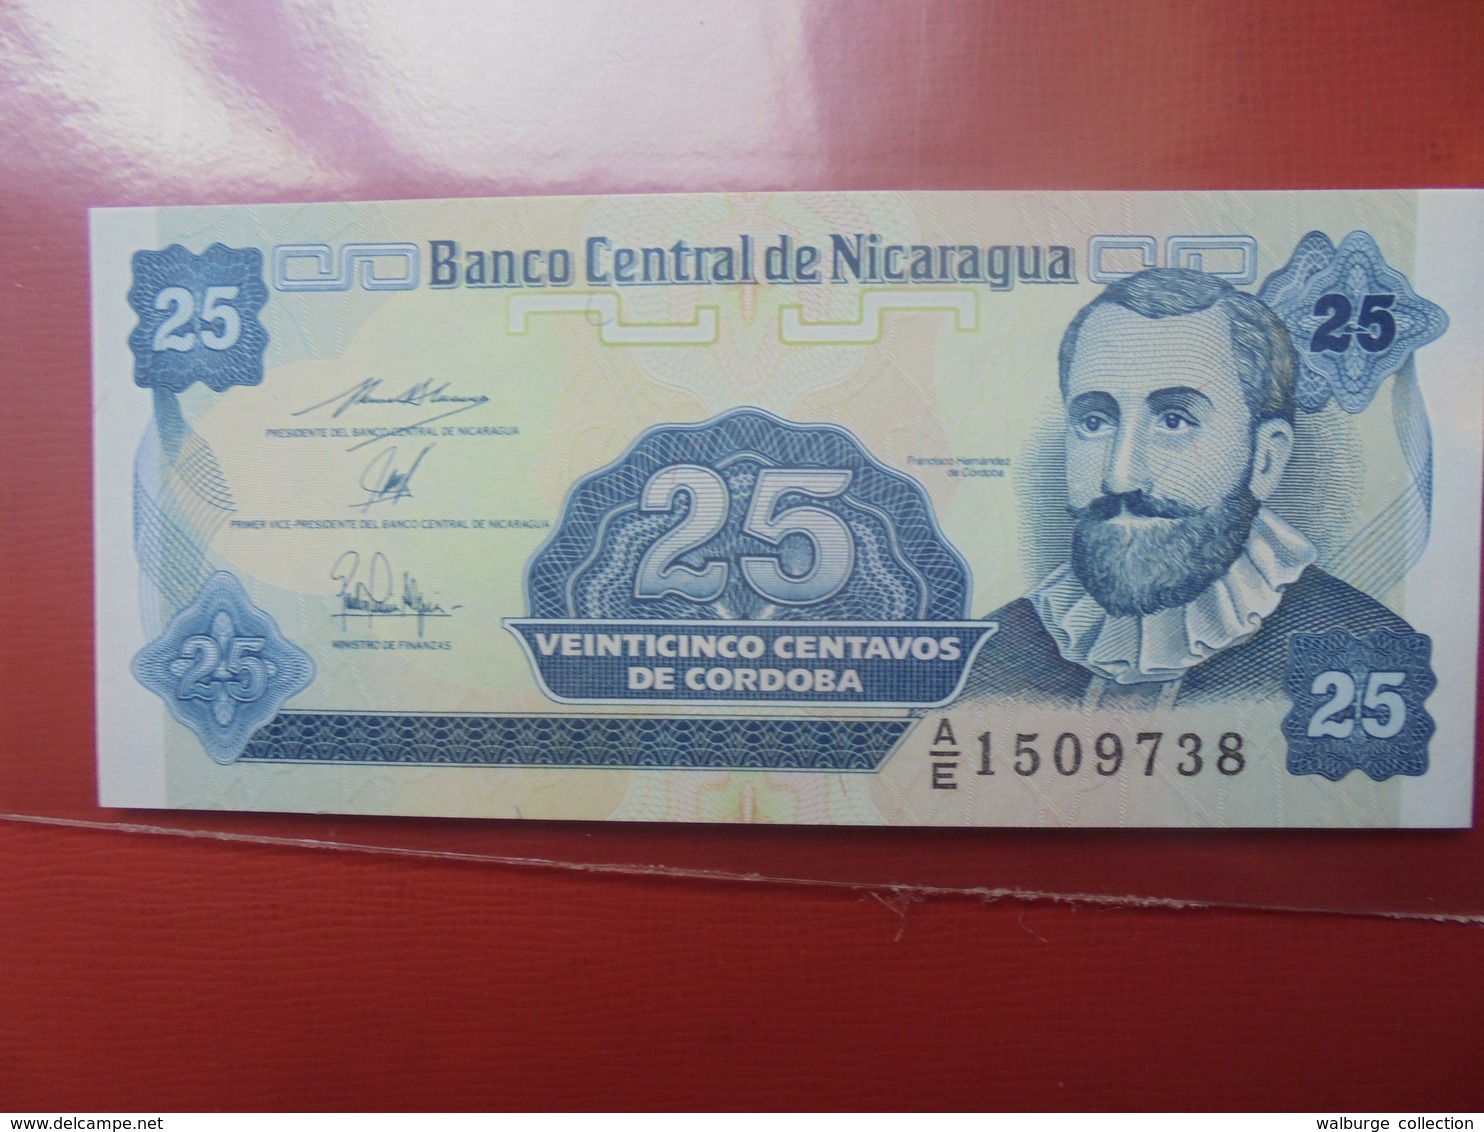 NICARAGUA 25 CENTAVOS 1991 PEU CIRCULER/NEUF - Nicaragua